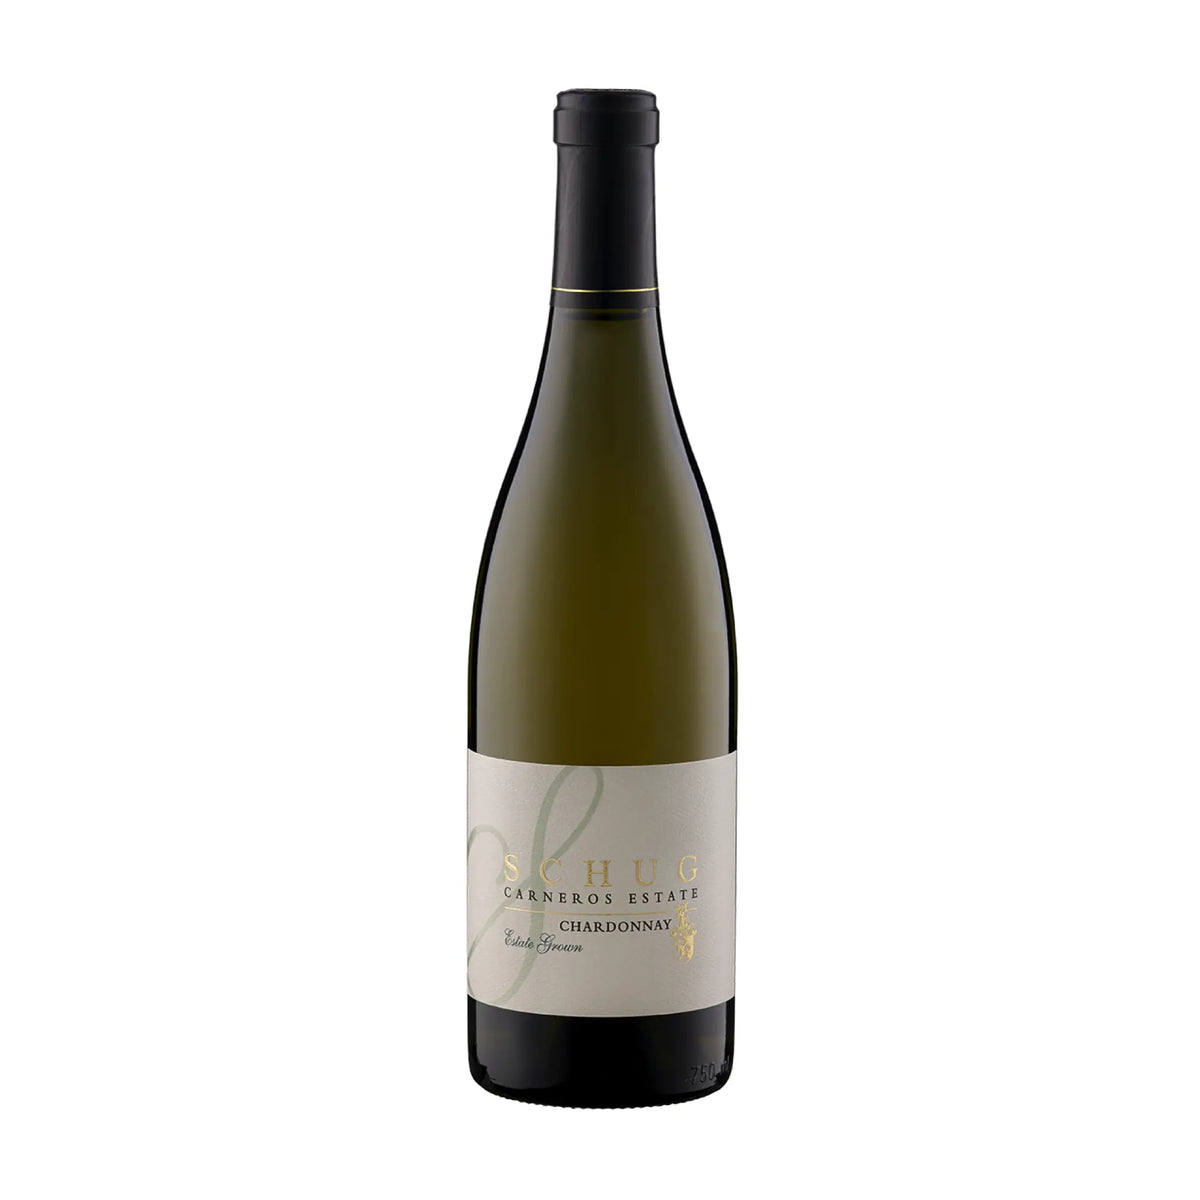 Schug Winery-Weißwein-Chardonnay-USA-Kalifornien-2019 Chardonnay "Estate Grown" Carneros-WINECOM